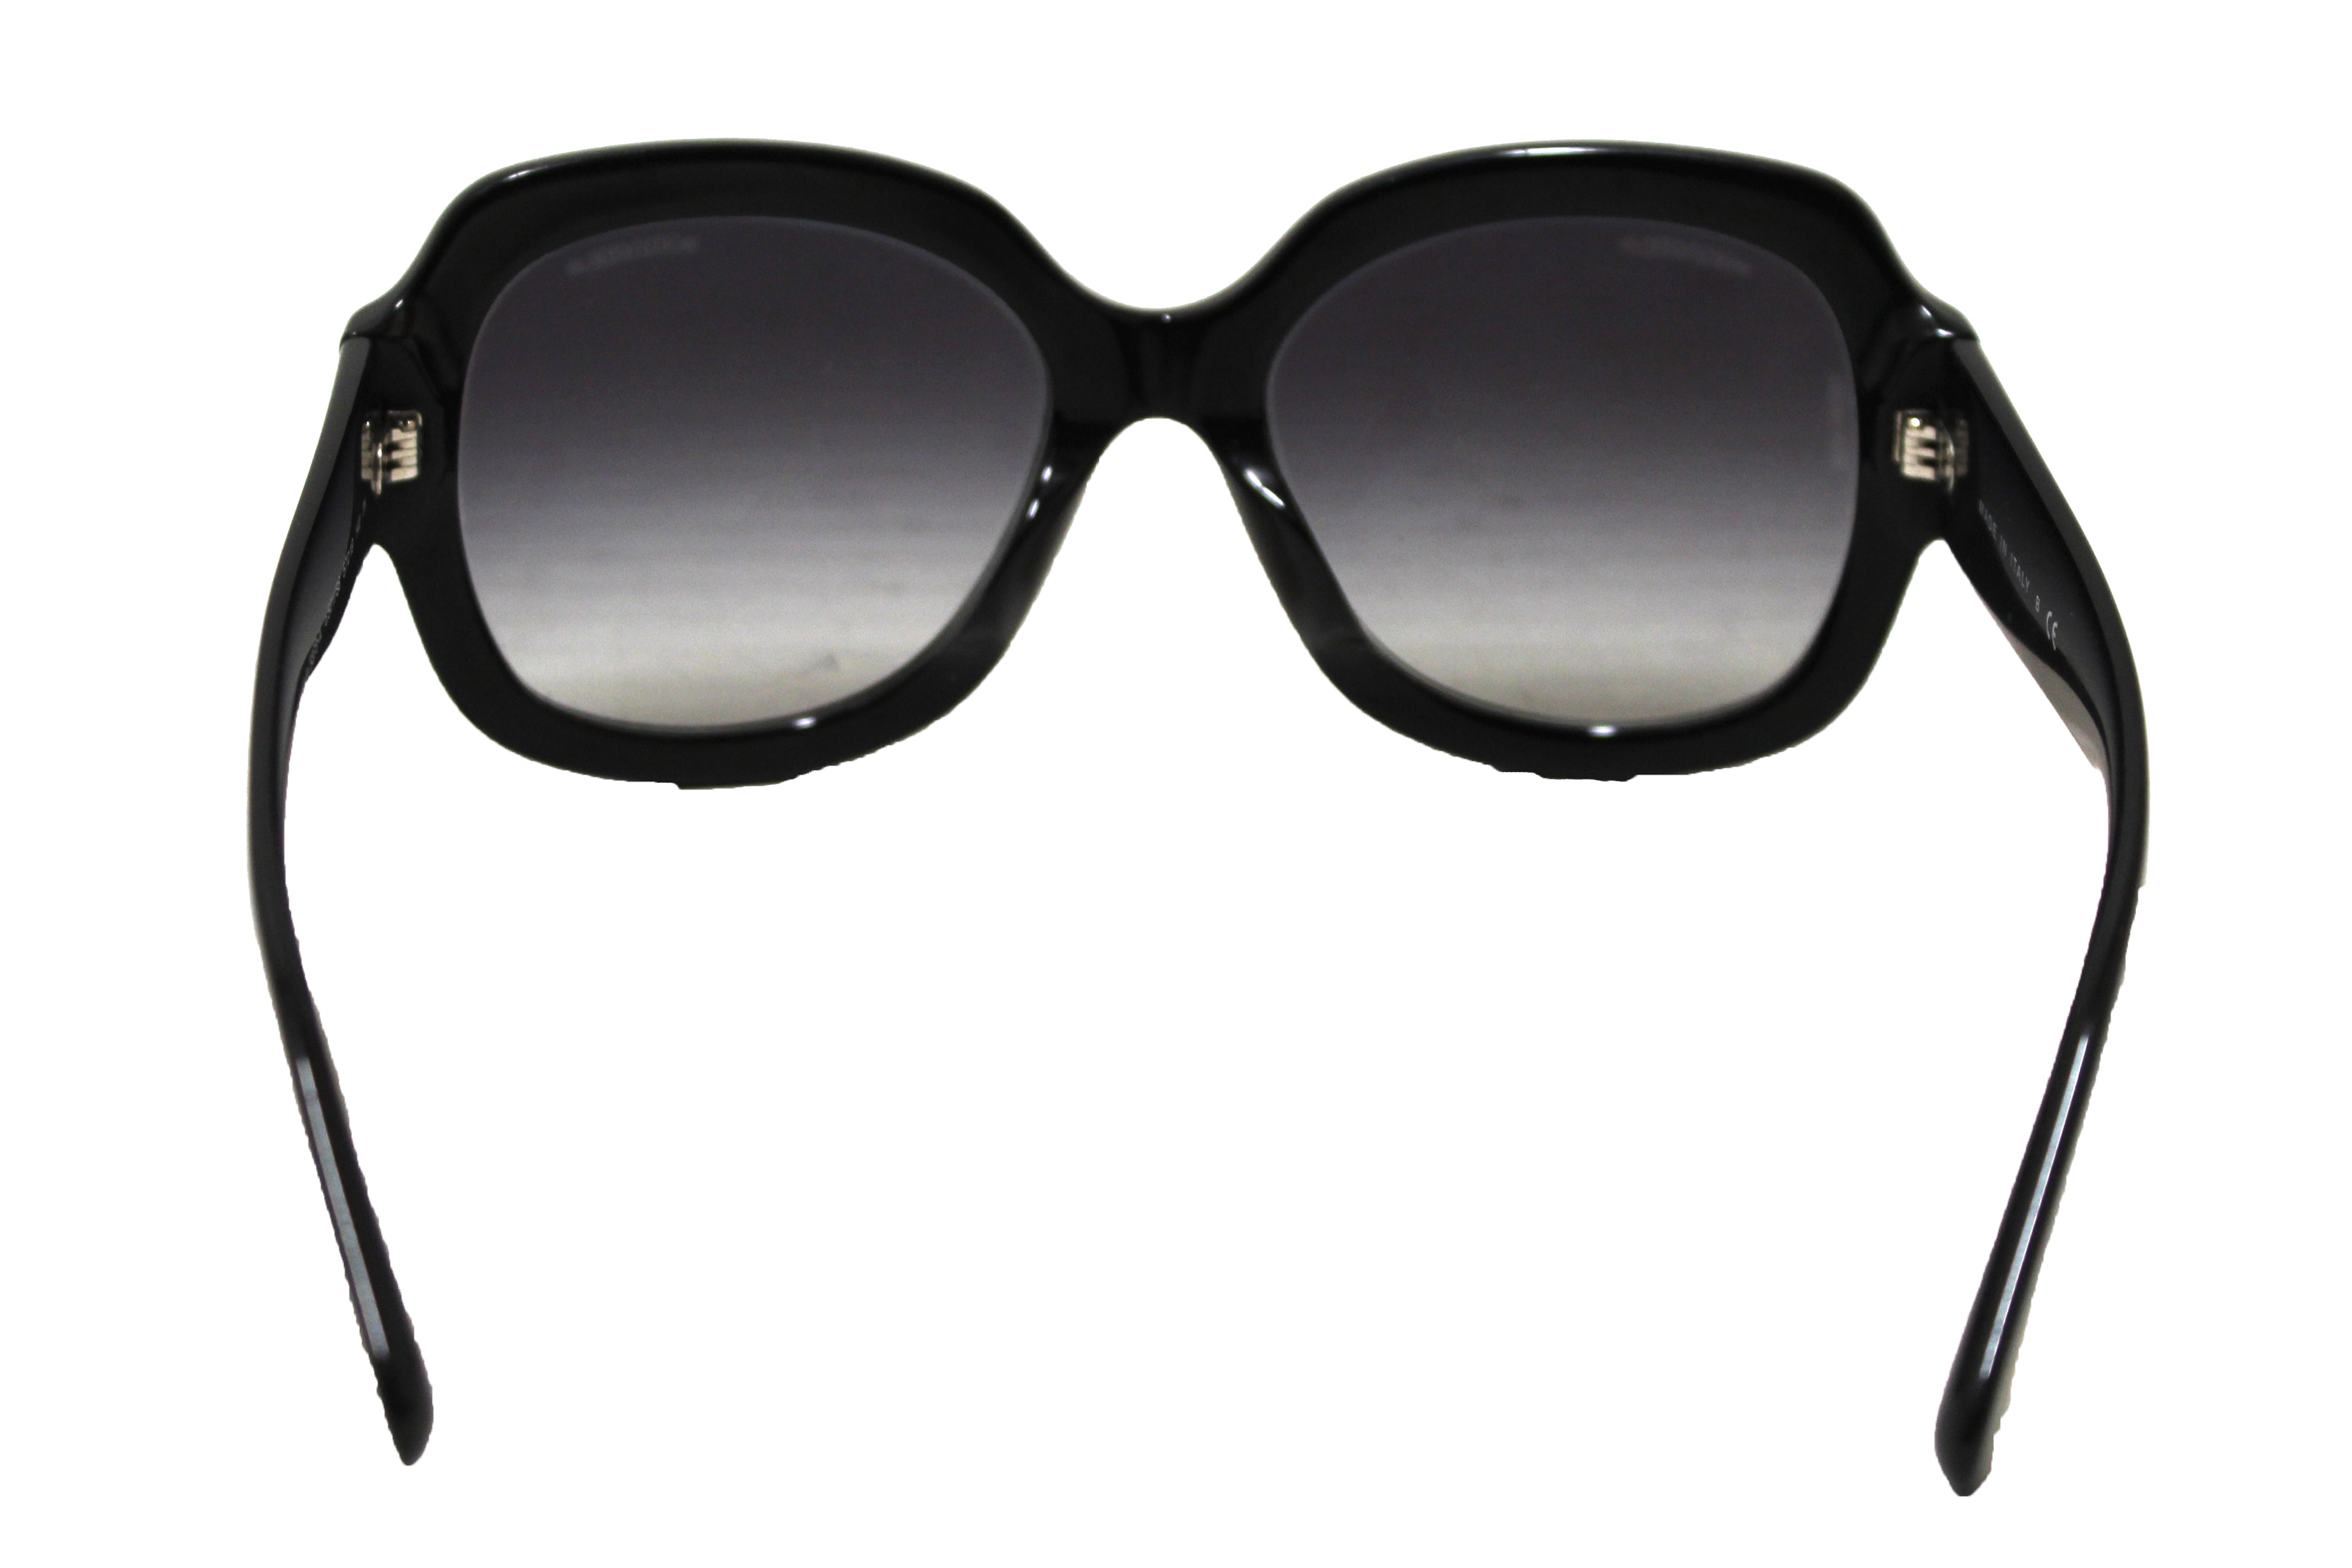 CHANEL, Accessories, Chanel Black Acetate Square Sunglasses